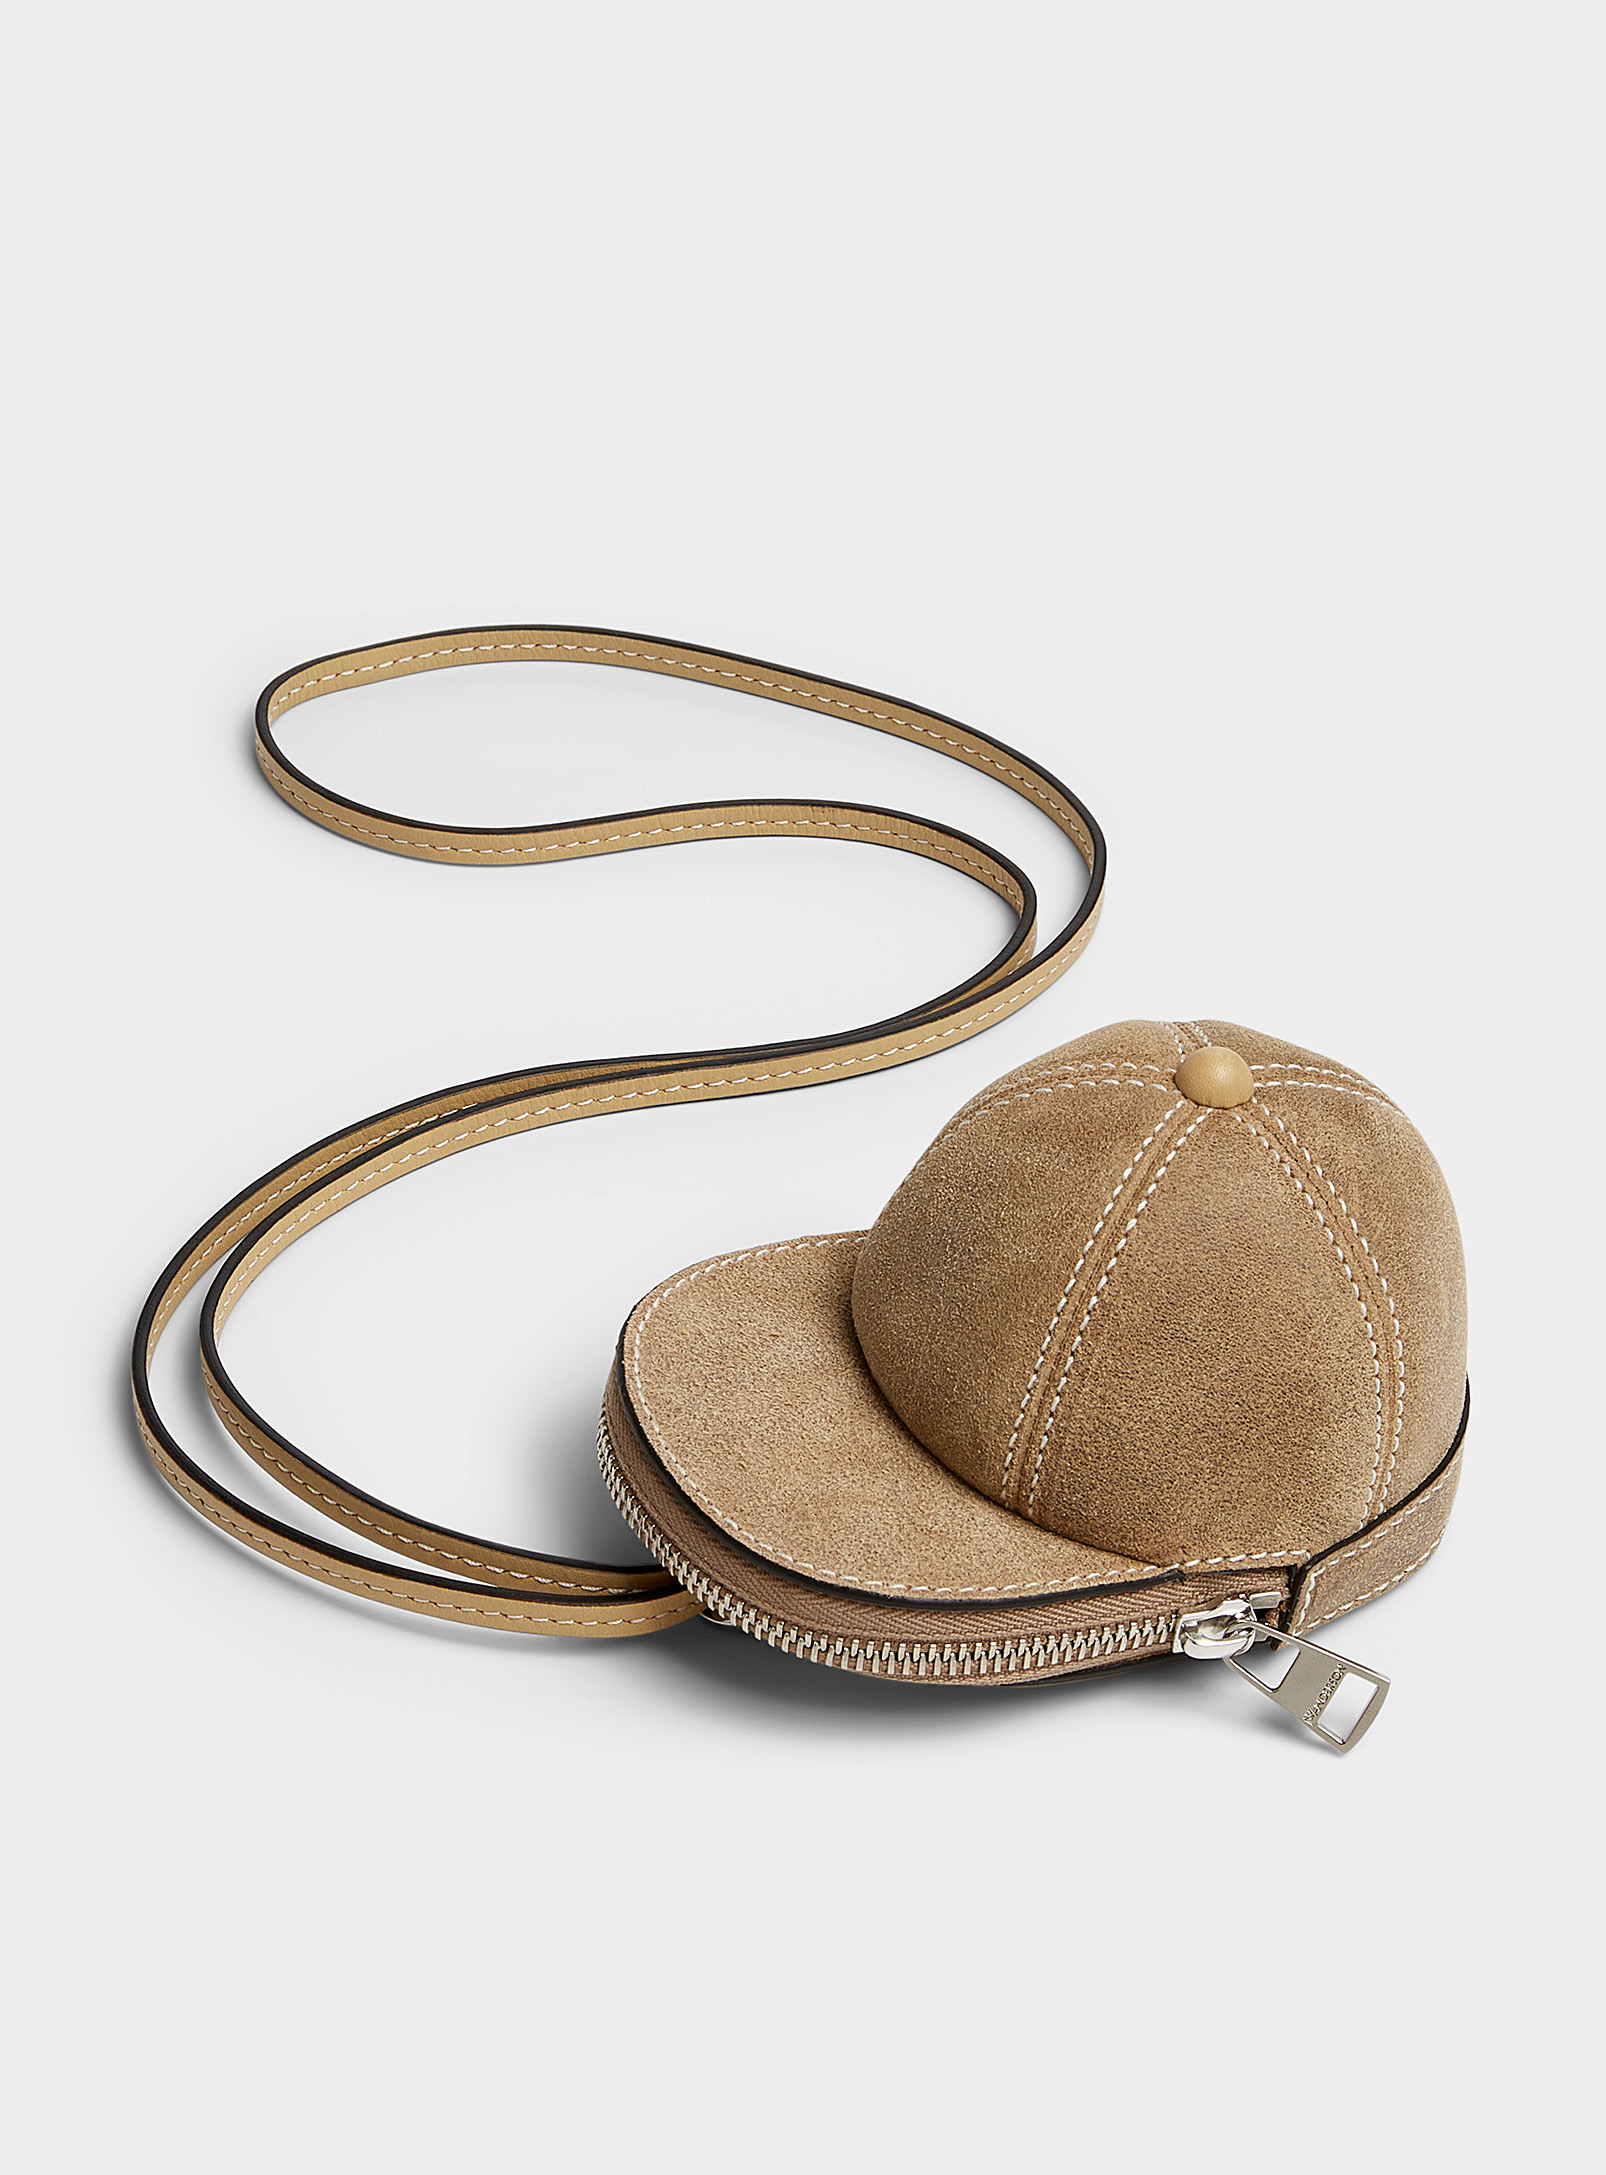 JW Anderson - Men's Small suede cap bag